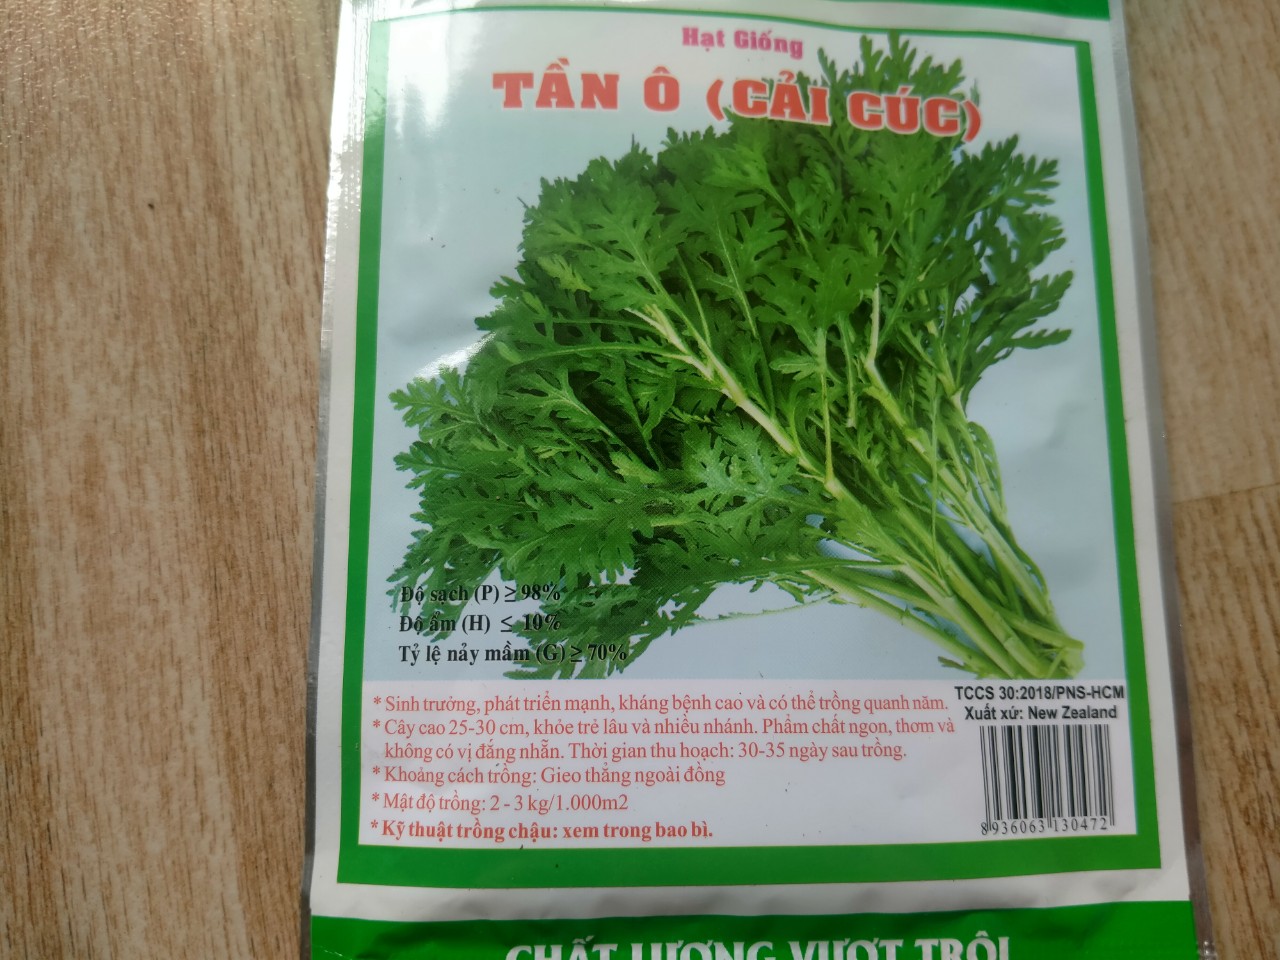 Hạt giống rau tần ô (cải cúc) Phú Nông gói 20gr